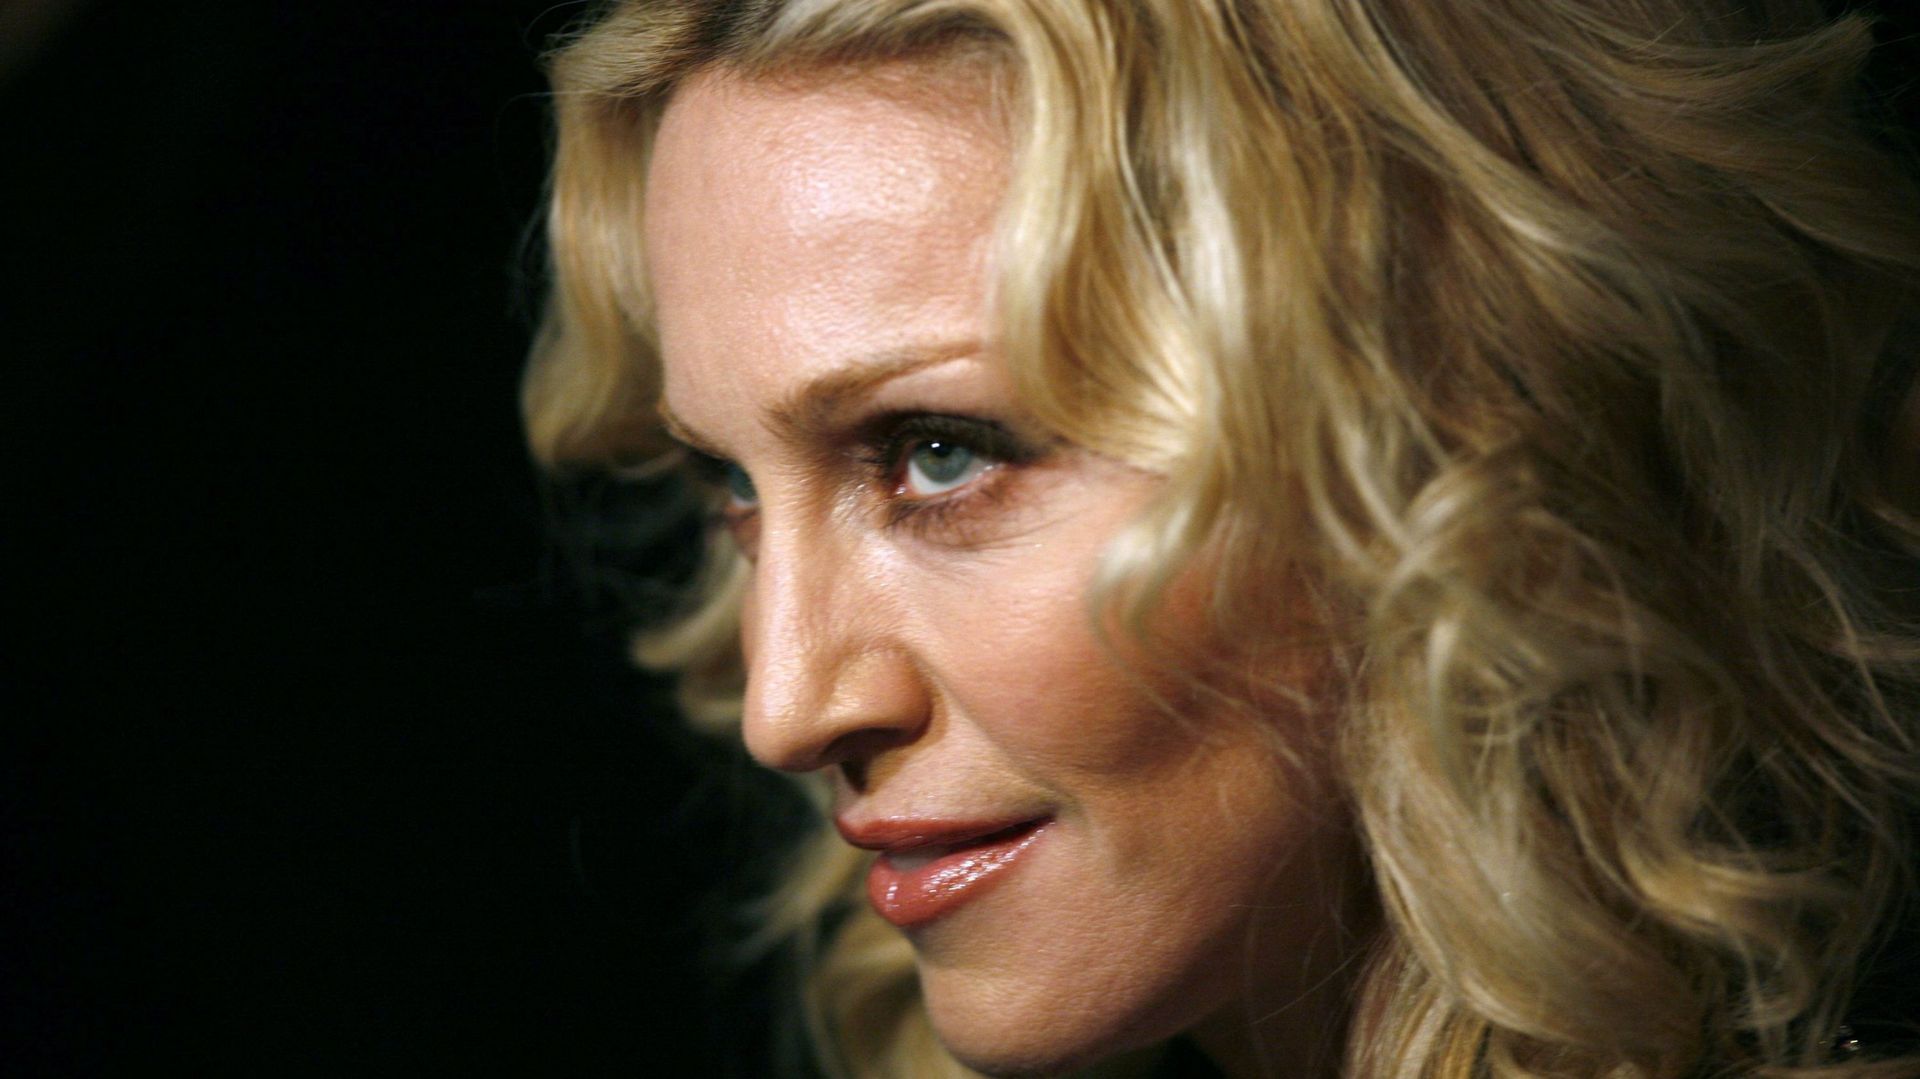 Coronavirus : Instagram bloque Madonna après la publication d’une "fausse information" sur le Covid-19